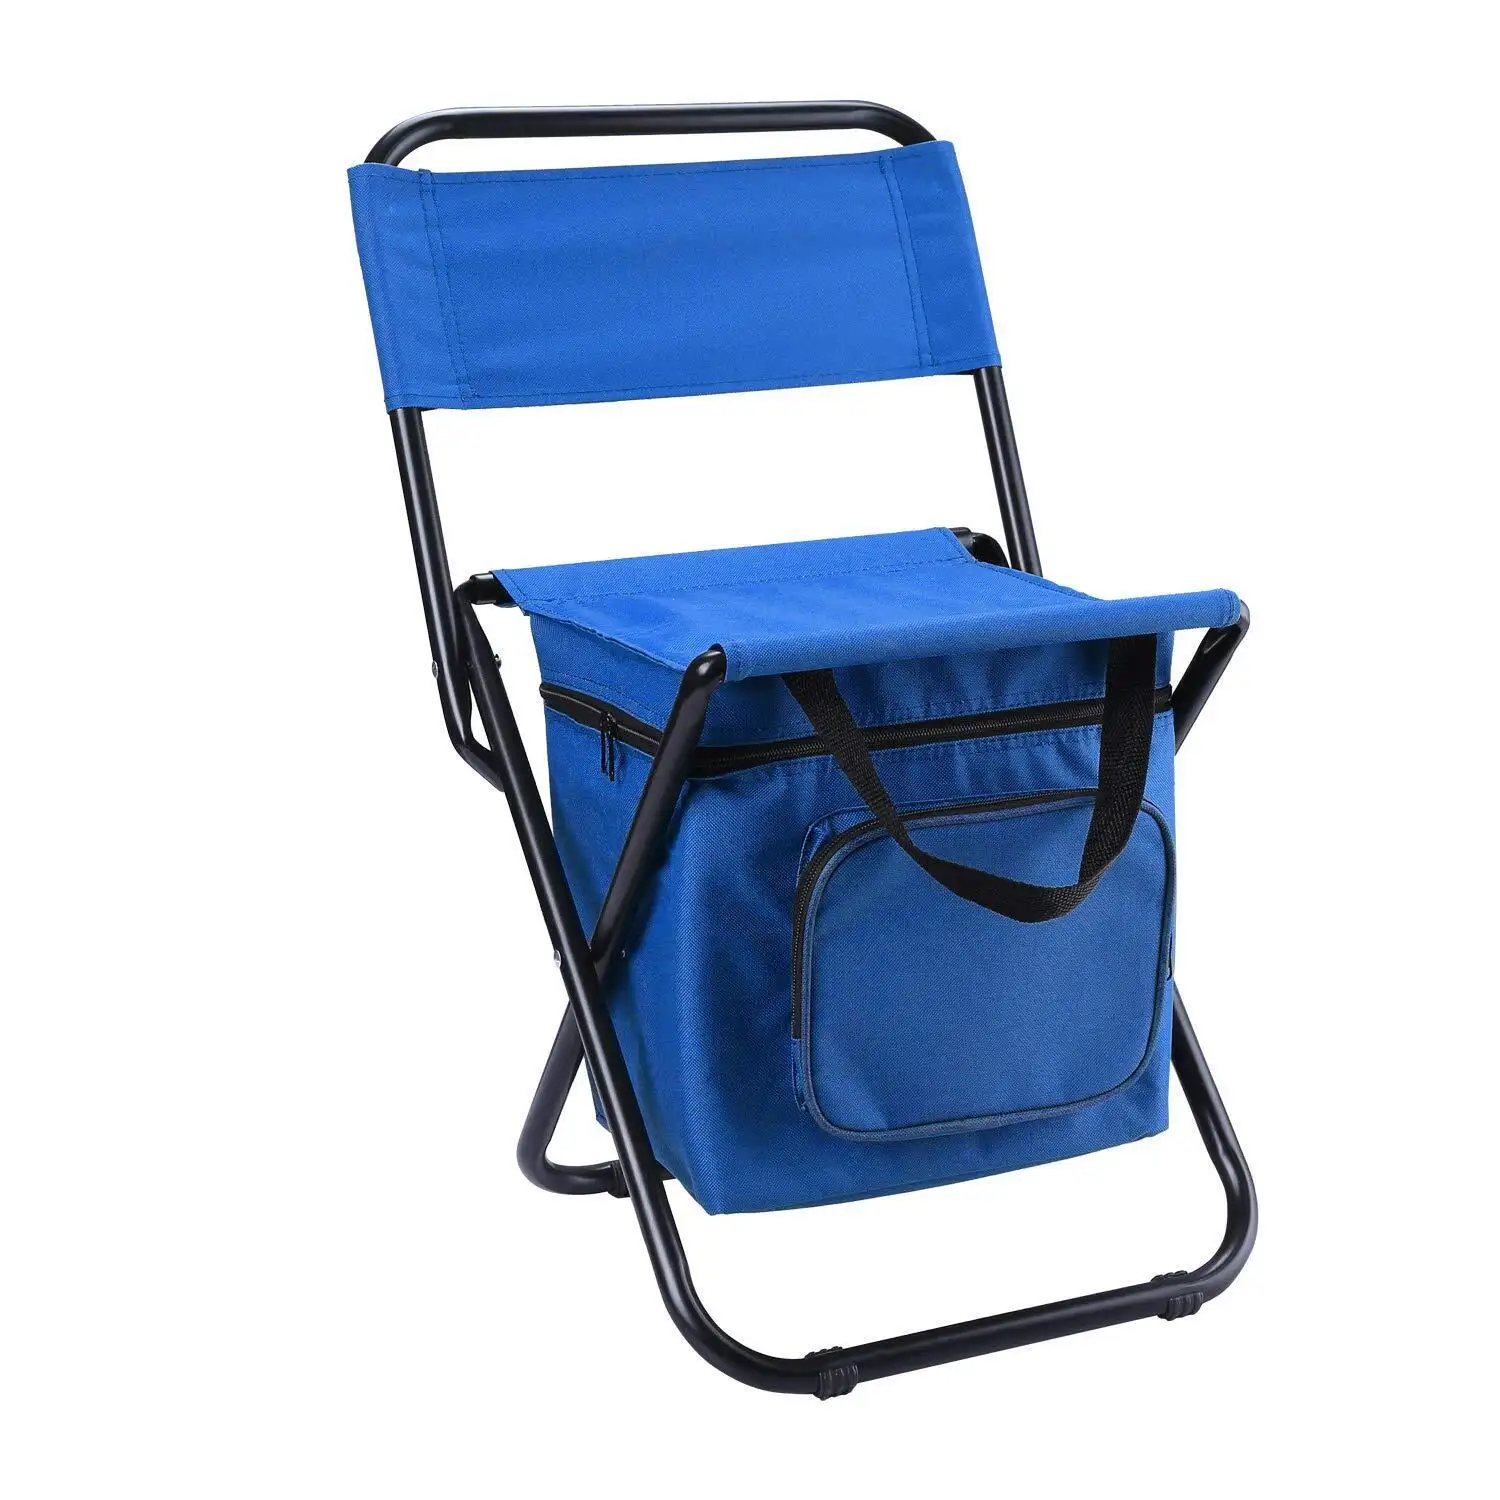 Al Aire Libre de alta resistencia personalizado campamento plegable silla plegable de camping al por mayor fabricantes refrigerador portátil playa mochila silla